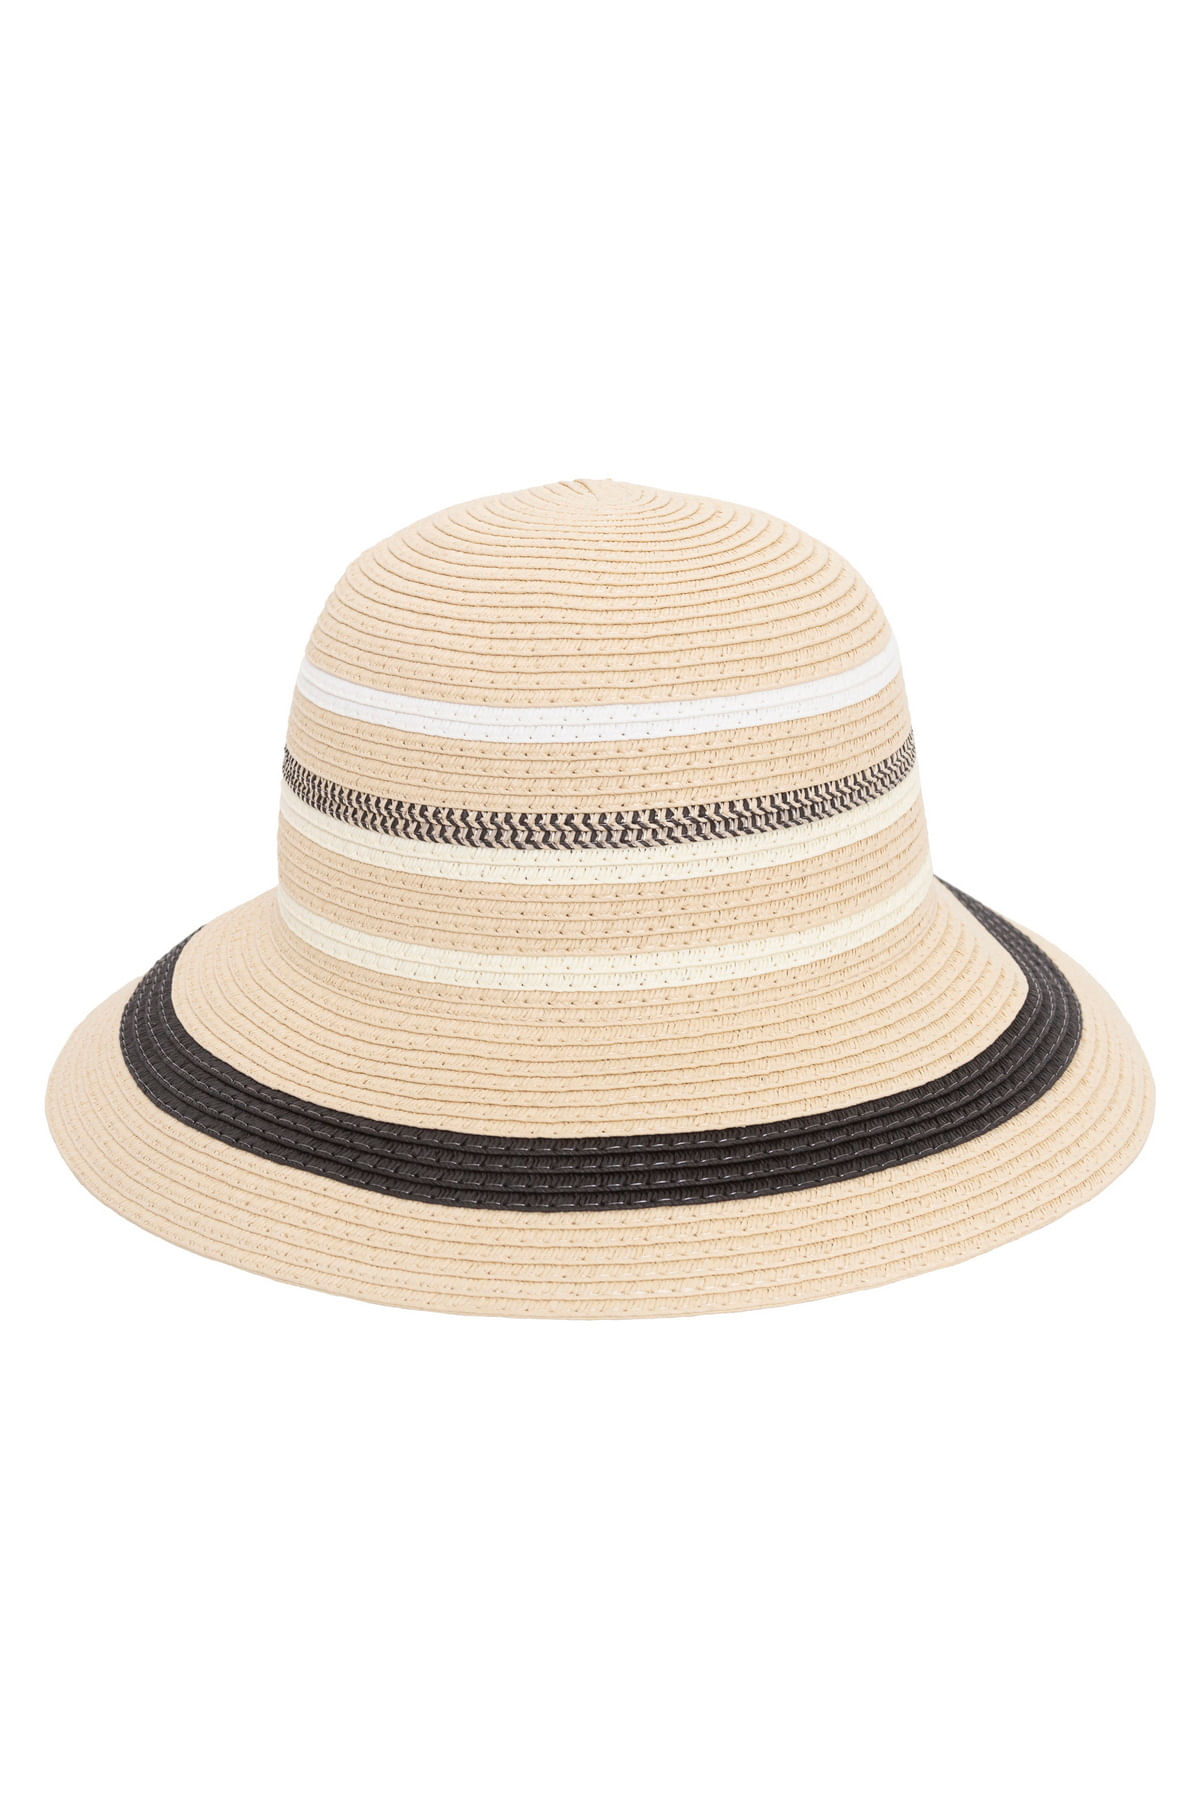 C&A chapéu juvenil bucket hat com bordado preto 